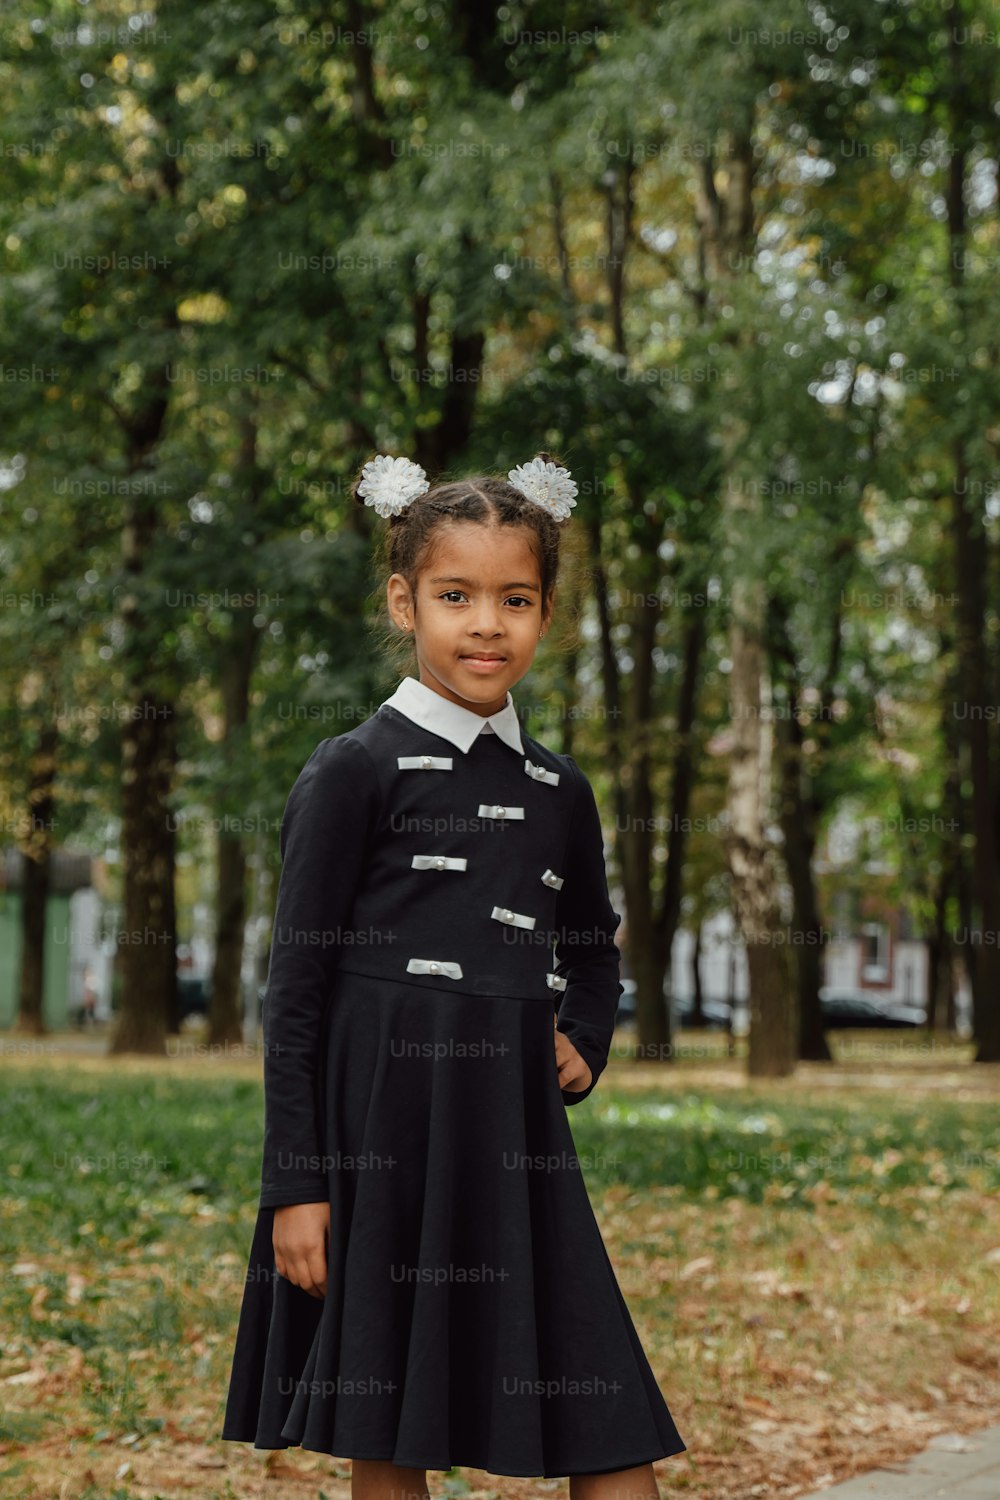 Une jeune fille en robe noire debout sur un trottoir